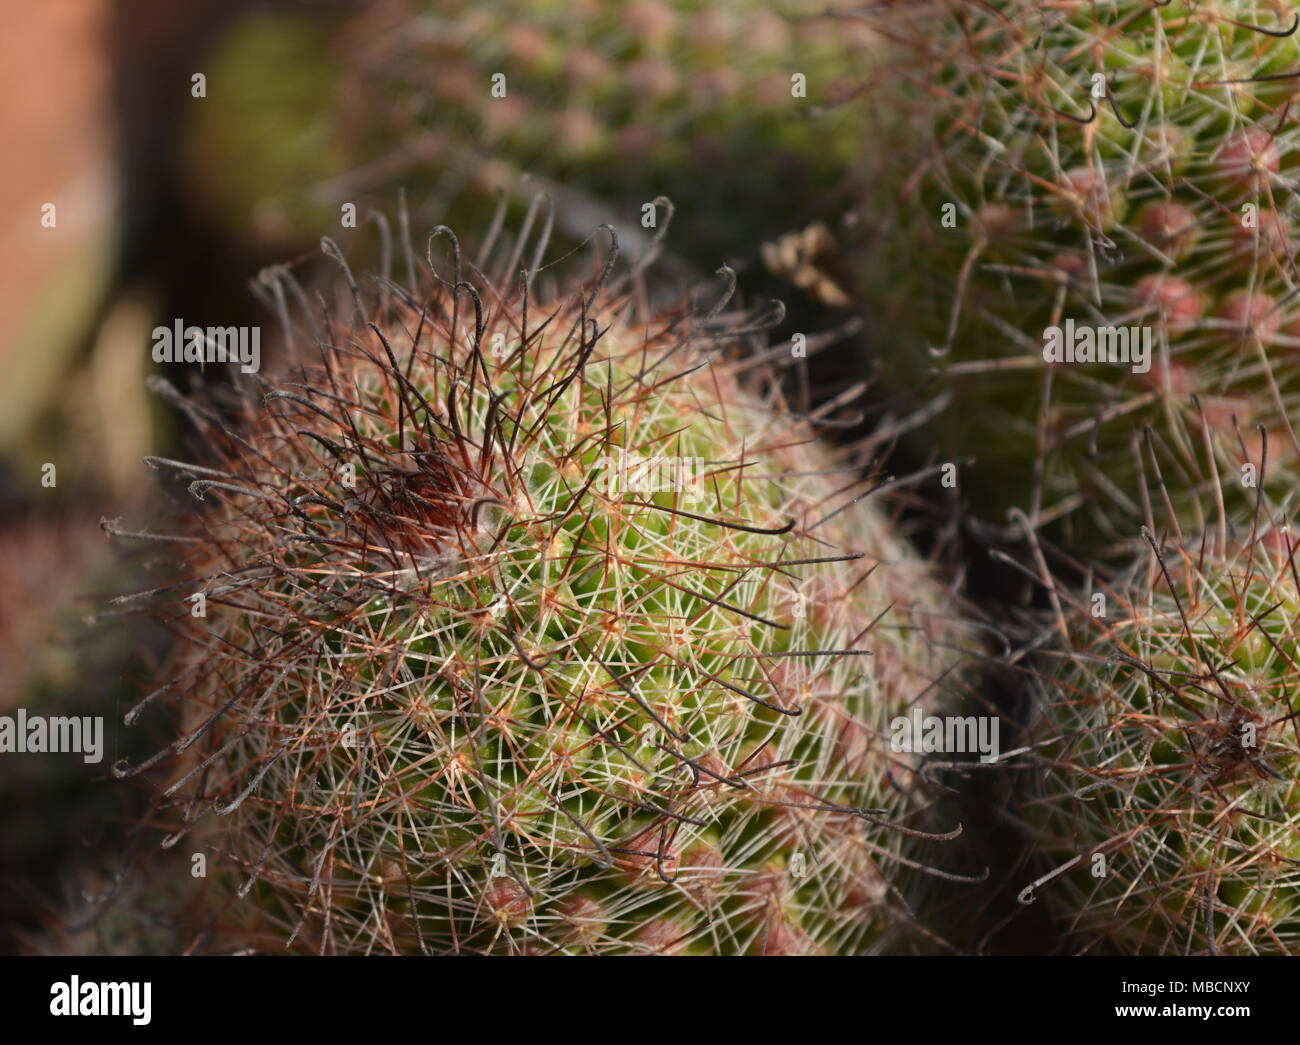 Closeup shot of a cactus Stock Photo